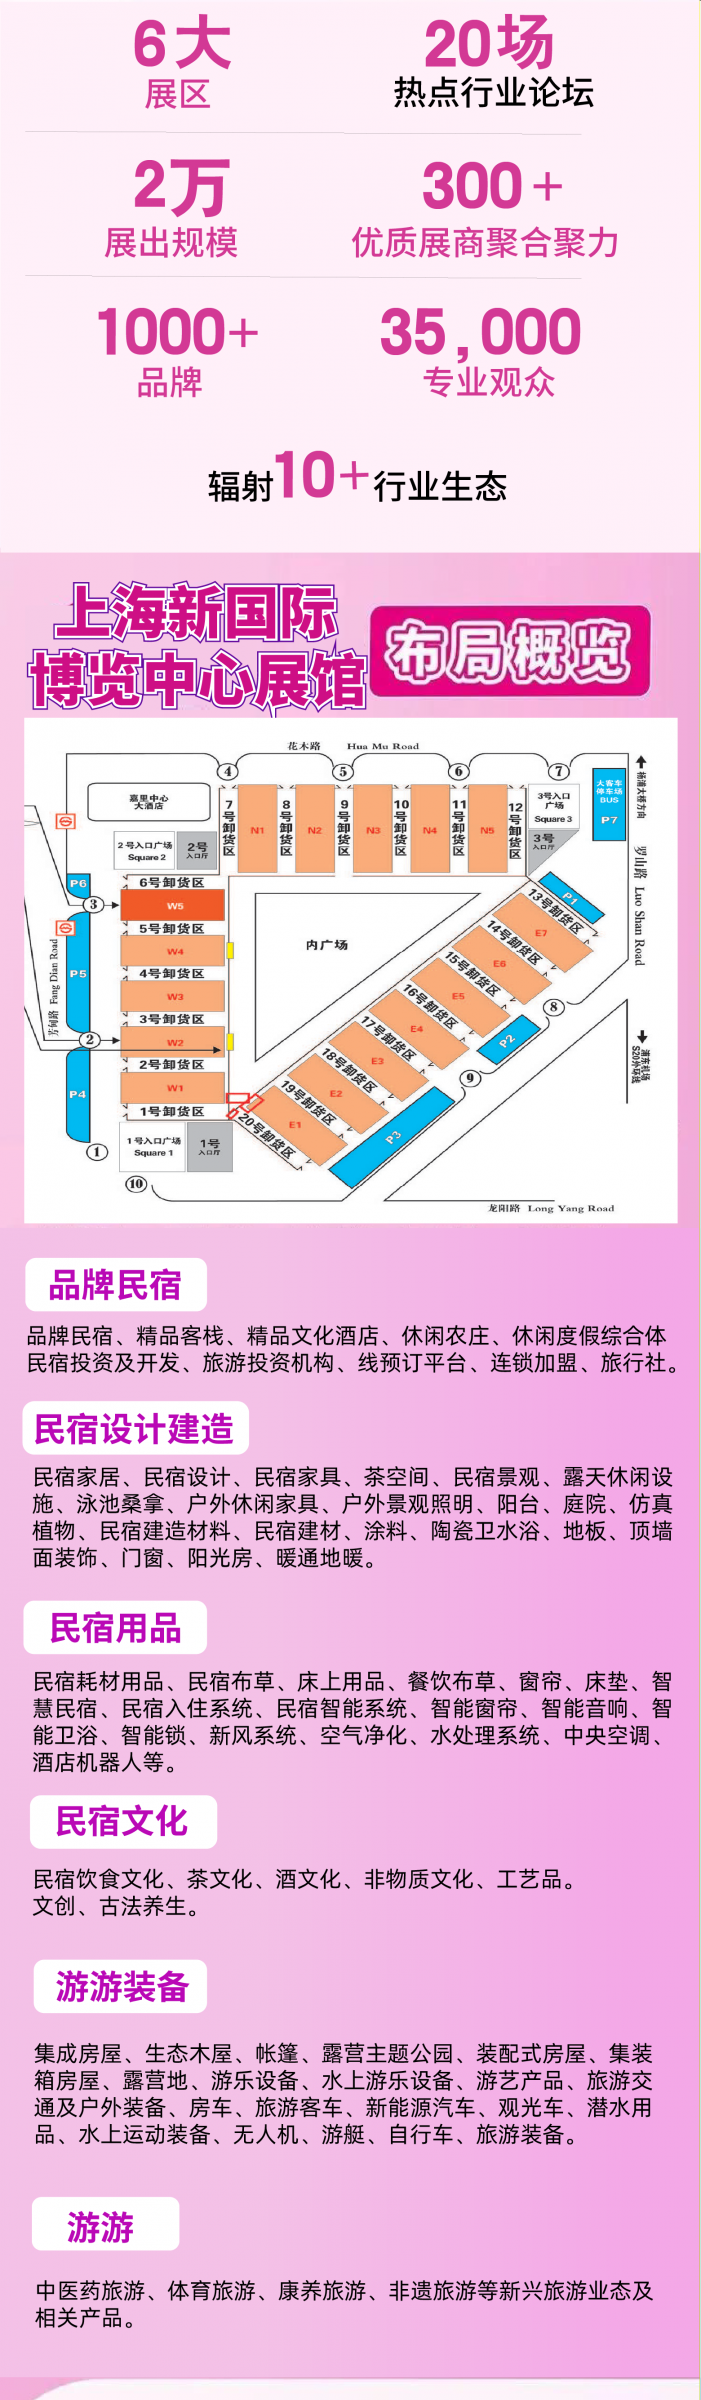 2023第五届中国(上海)国际民宿产业博览会,欢迎您报名参展！联系电话：15313206870